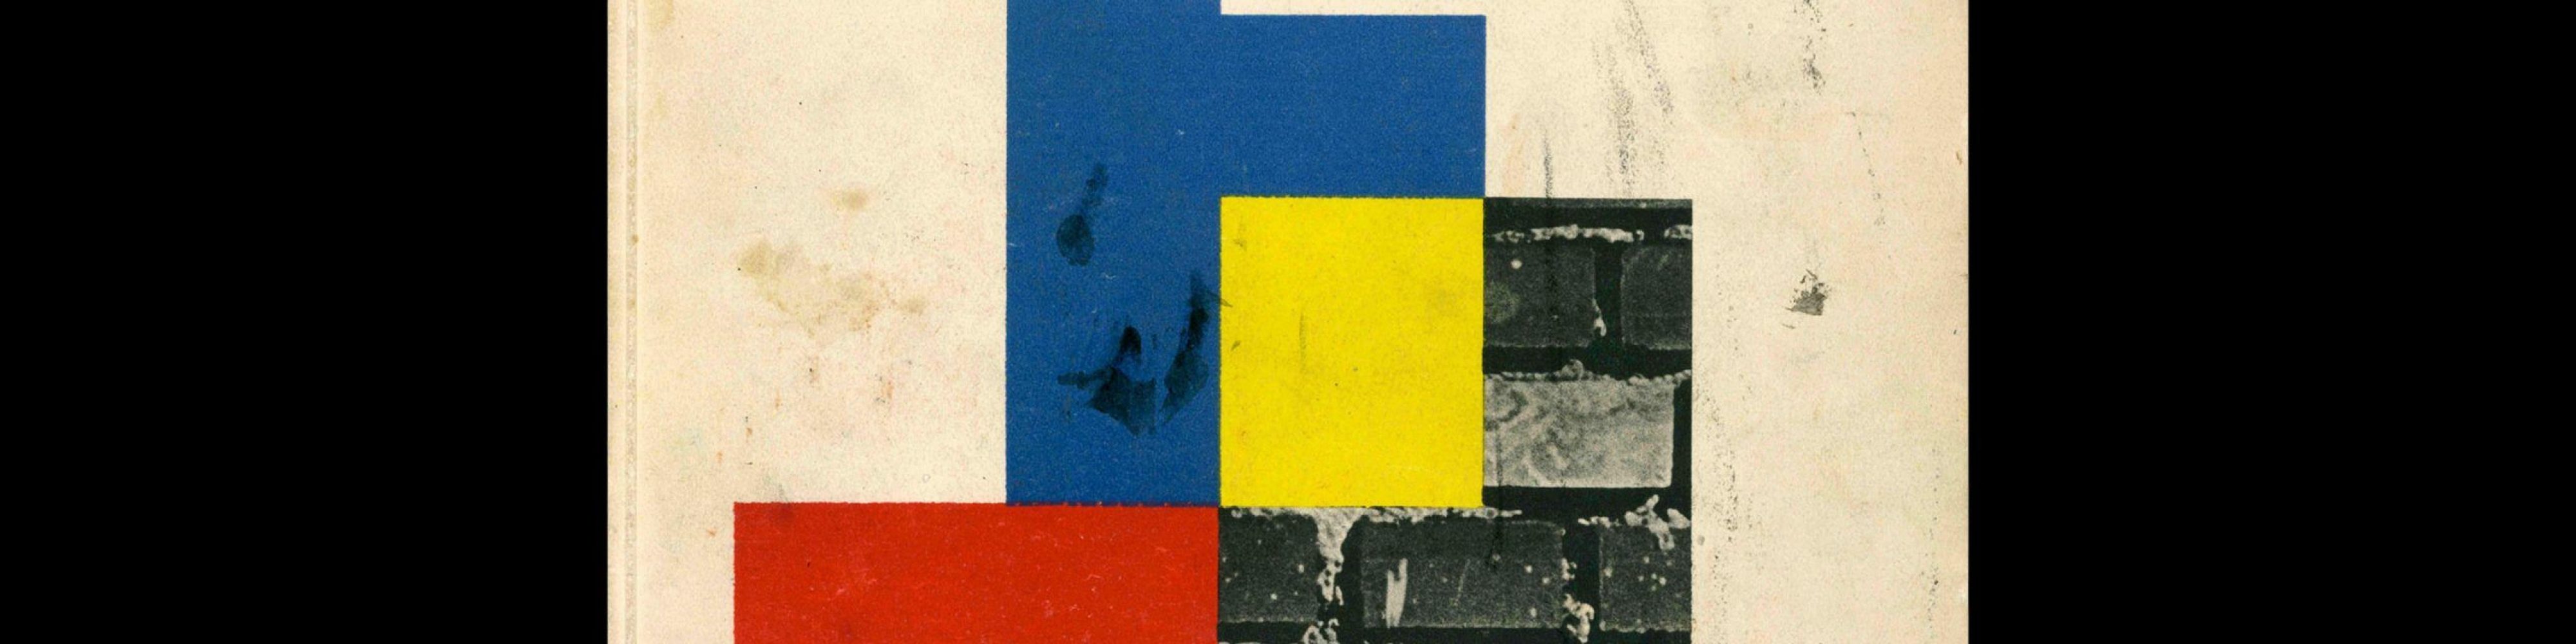 Gebrauchsgraphik, 9, 1950. Cover design by Michael Engelmann